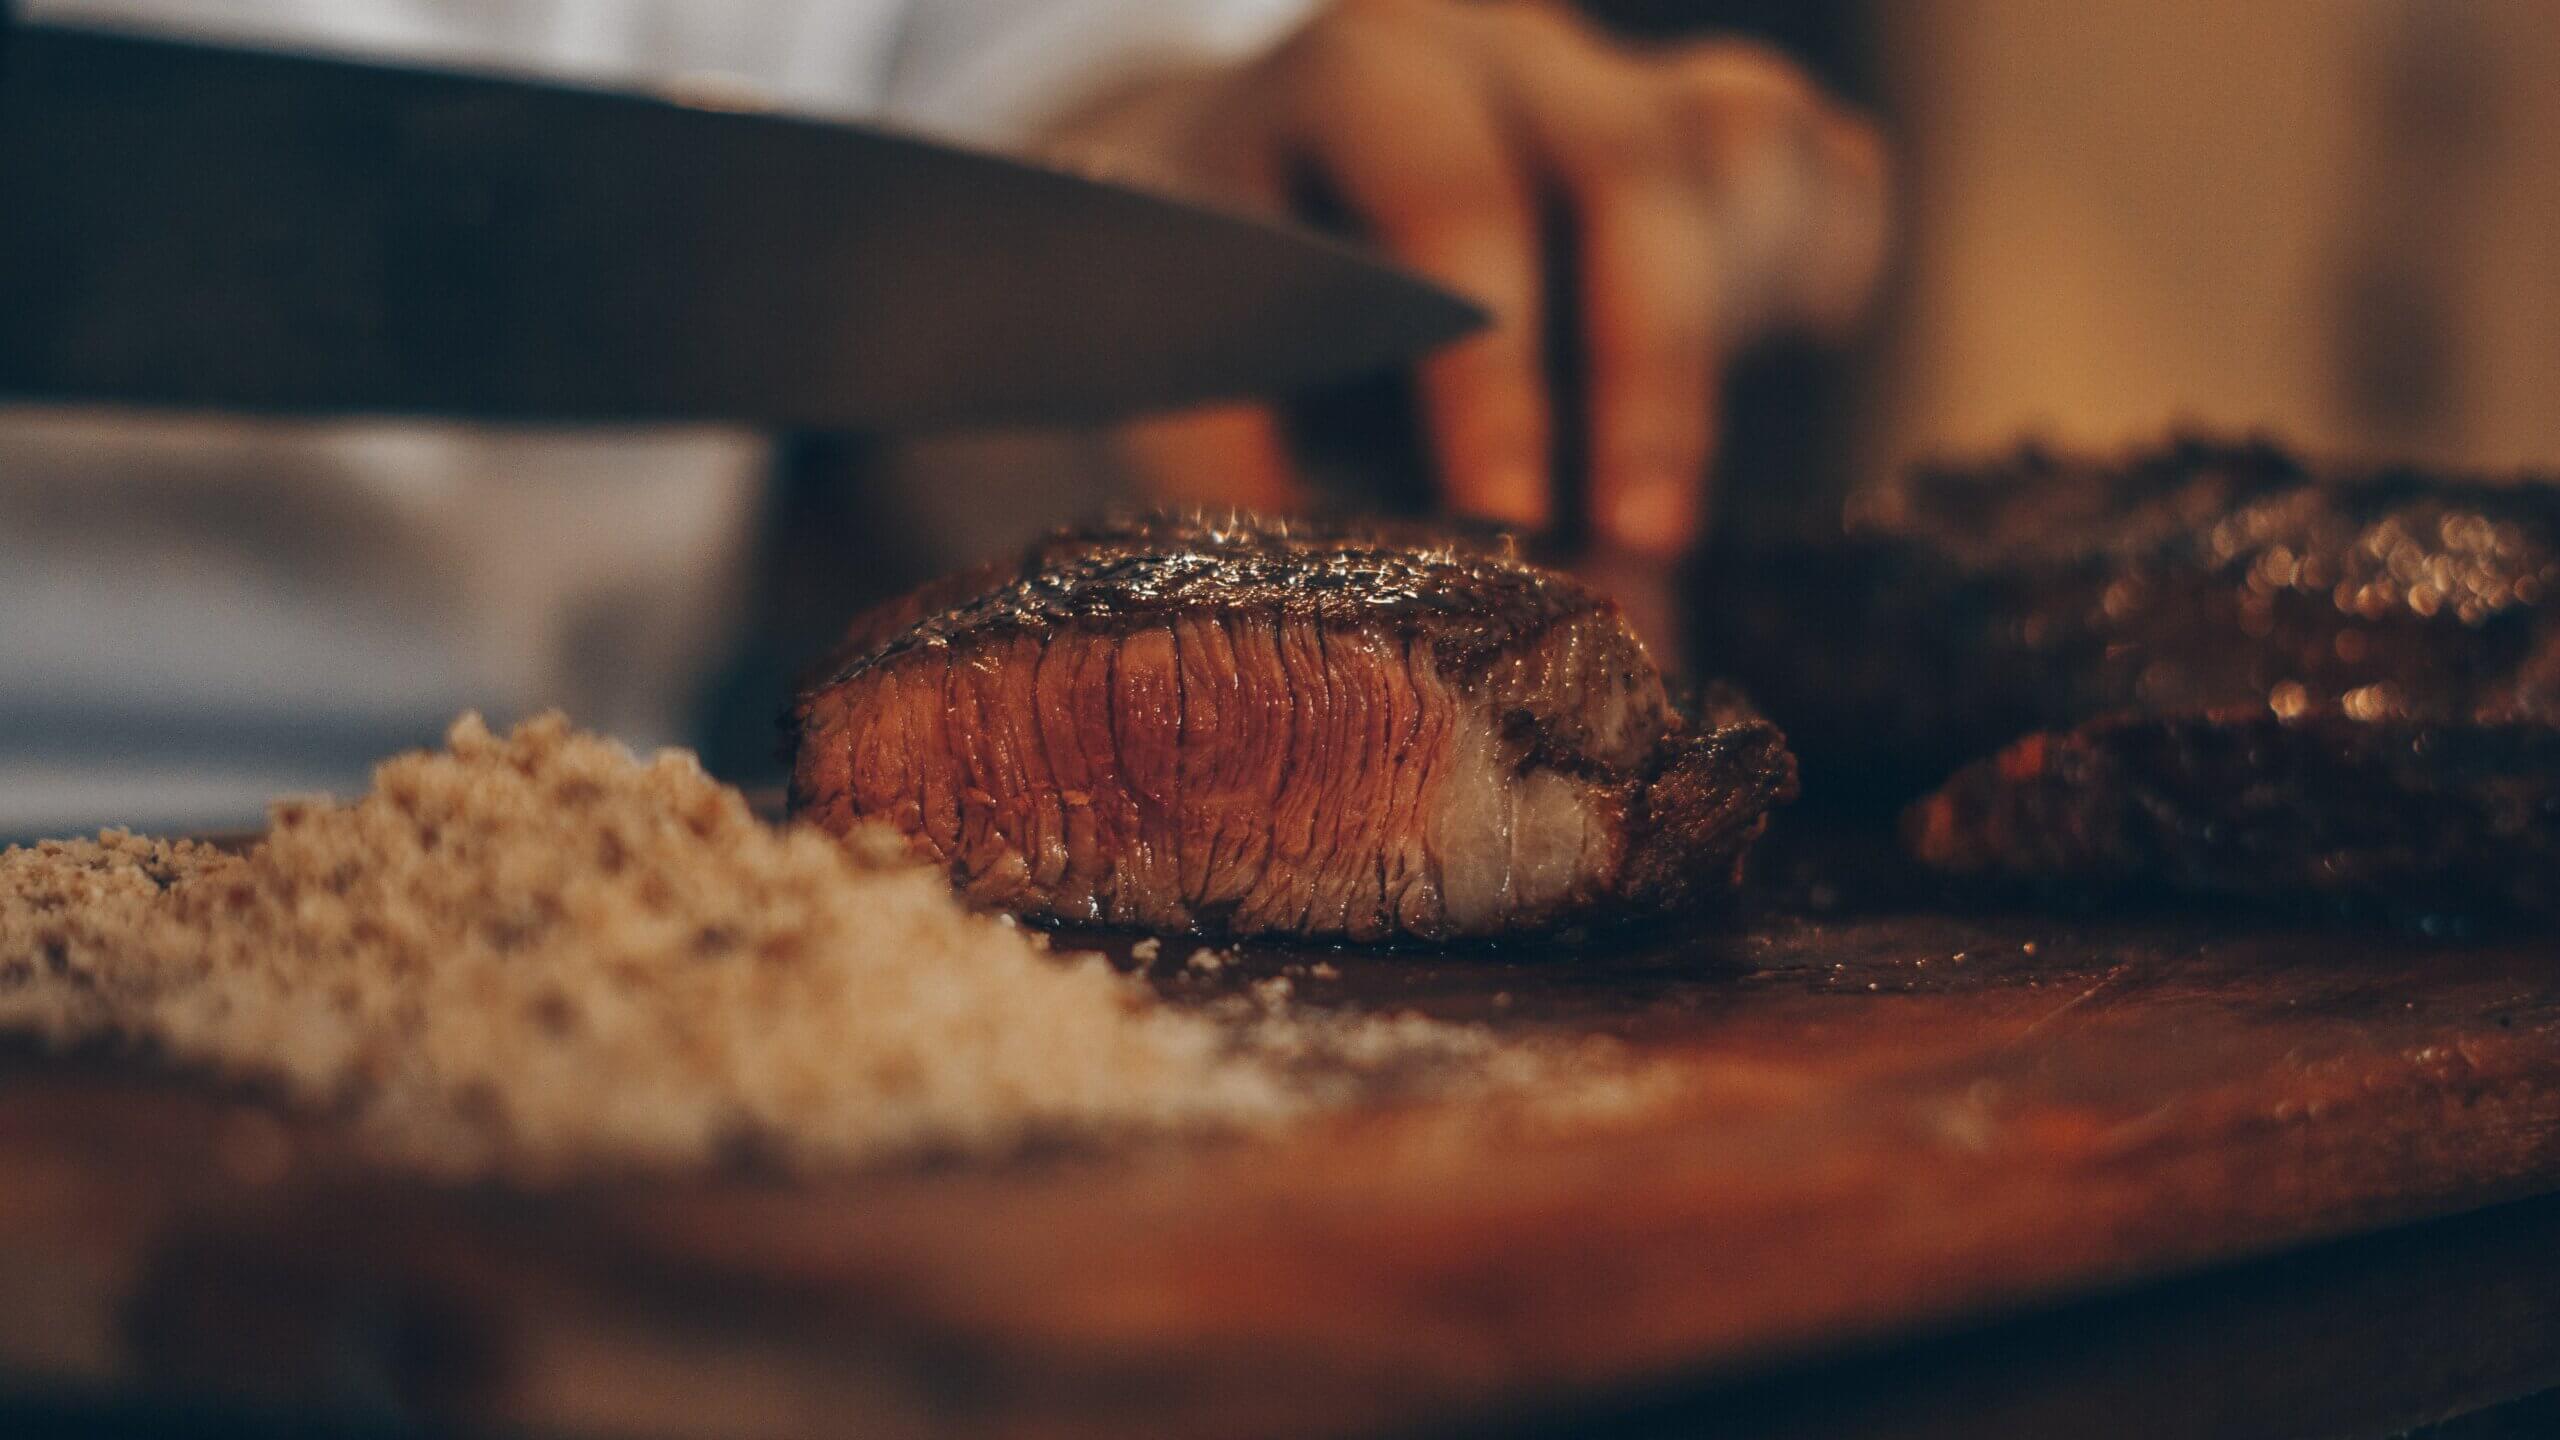 steak being sliced